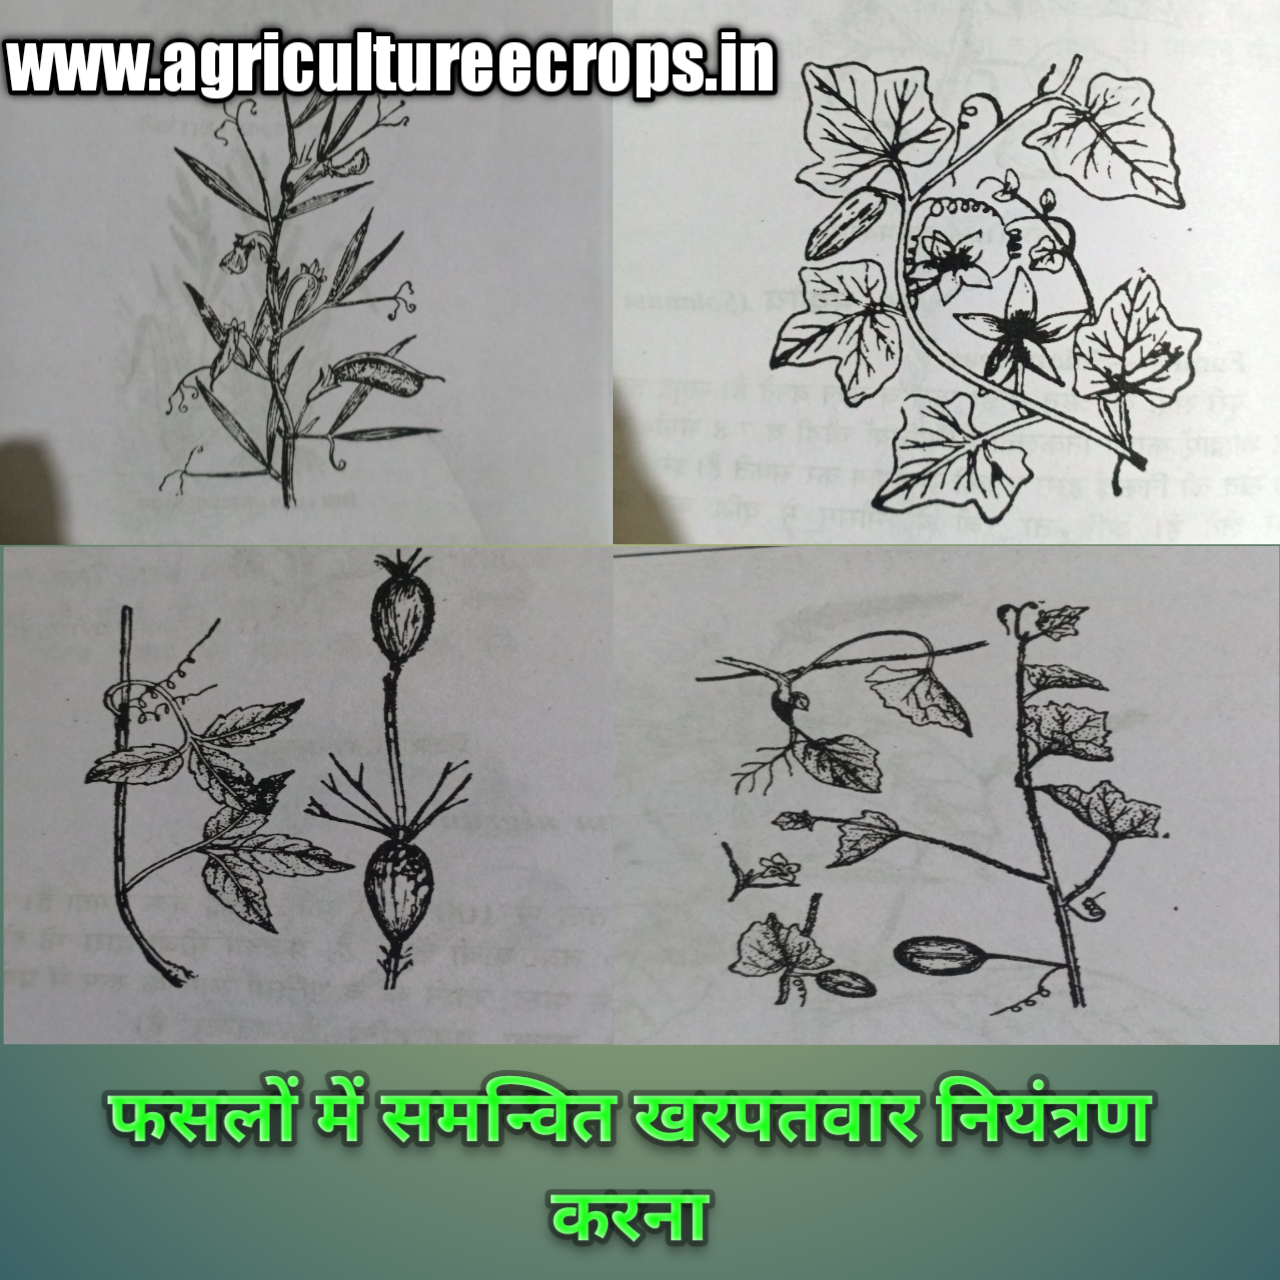 मुख्य फसलों में समन्वित खरपतवार नियंत्रण, फसलों में समन्वित खरपतवार नियंत्रण कैसे करते हैं, Integrated weed management in major crops in Hindi